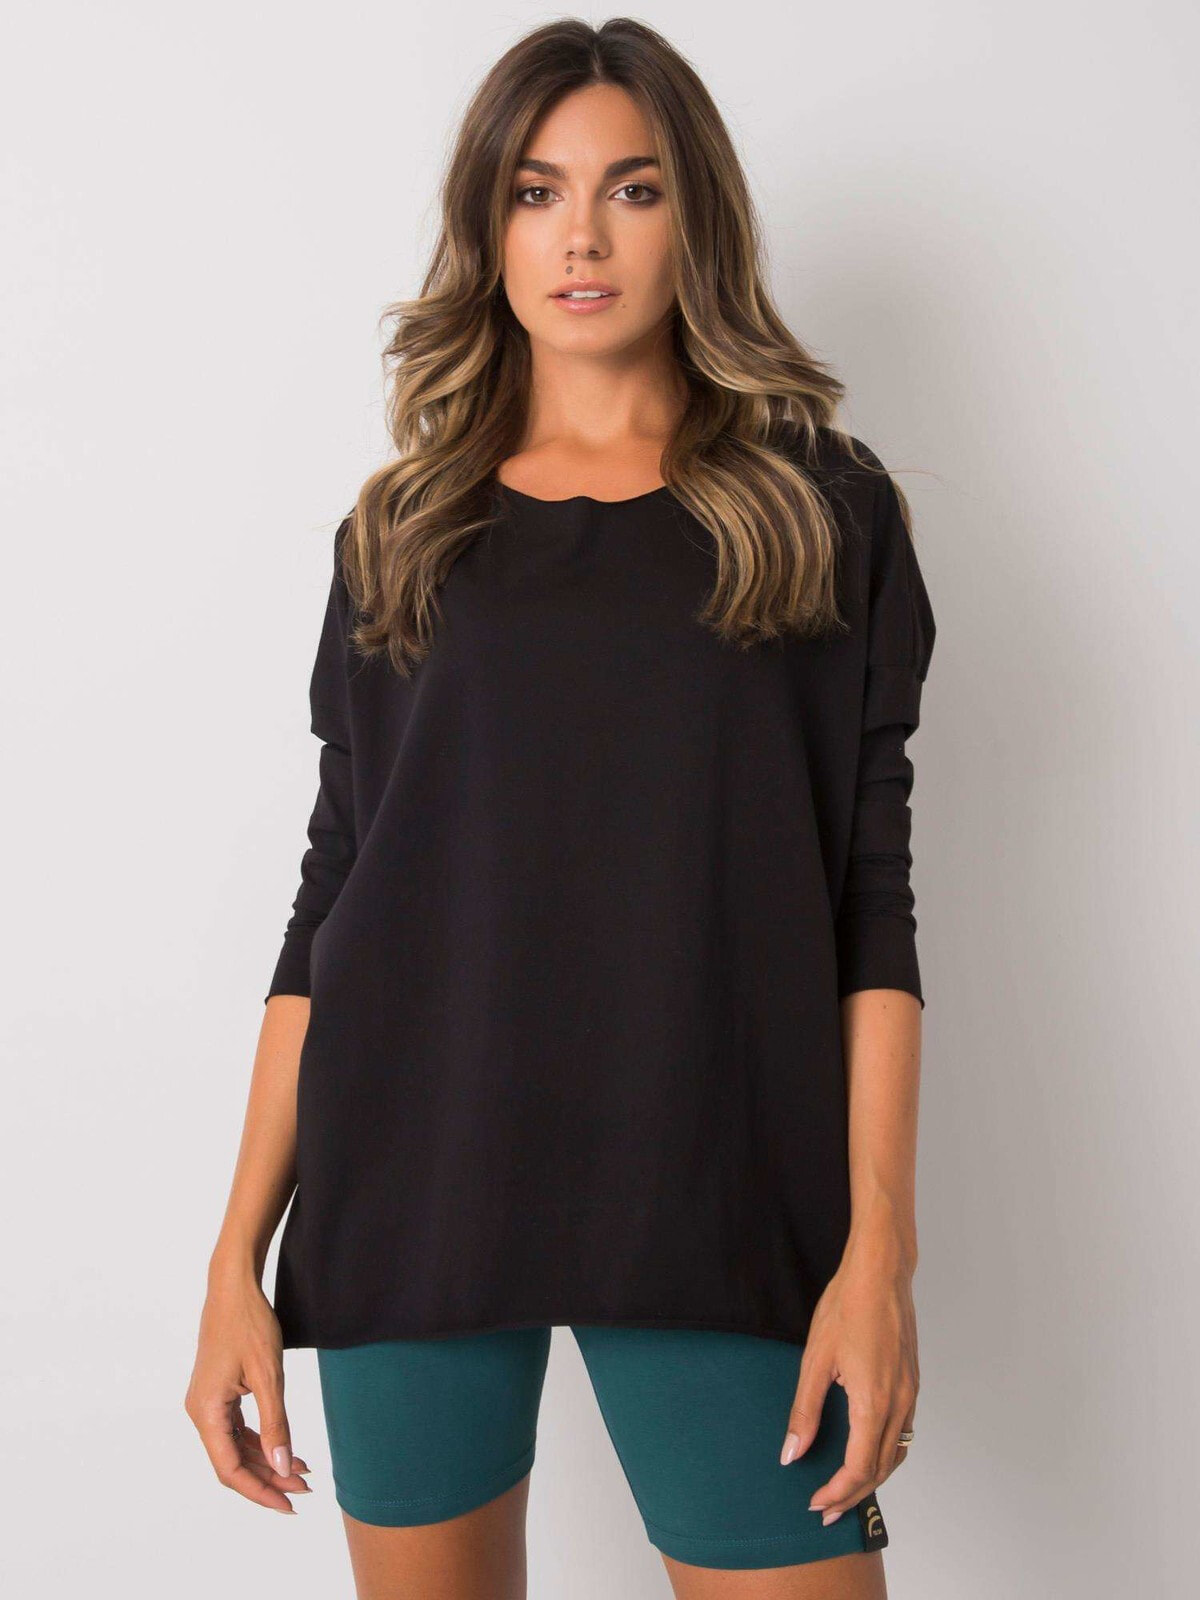 Женская блузка с удлиненным рукавом свободного кроя - черная Factory Price